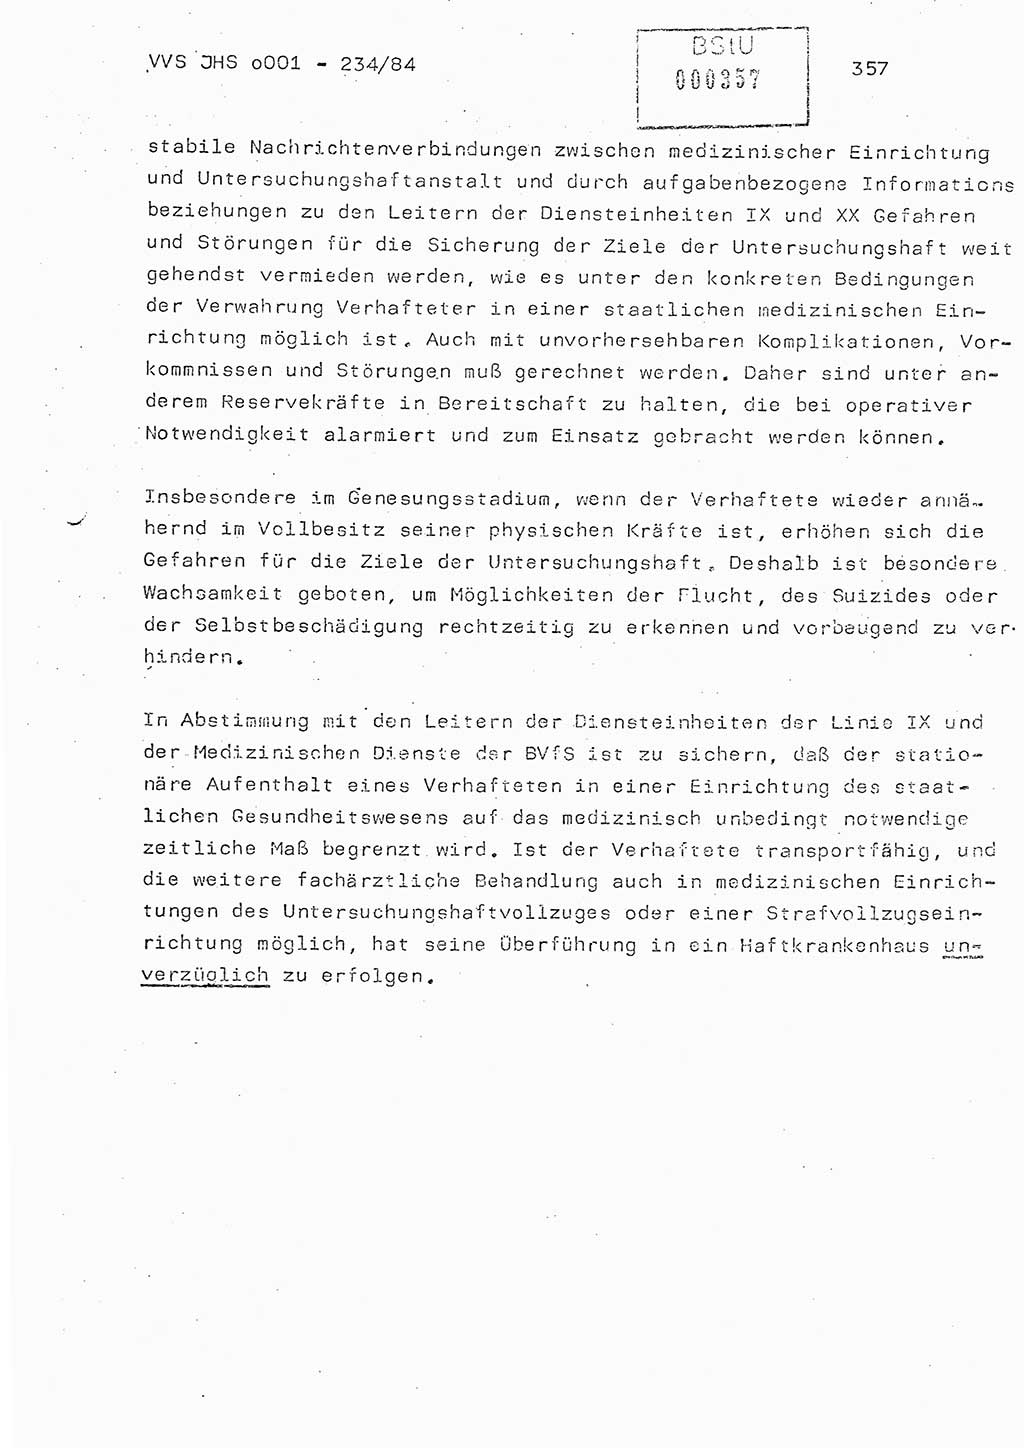 Dissertation Oberst Siegfried Rataizick (Abt. ⅩⅣ), Oberstleutnant Volkmar Heinz (Abt. ⅩⅣ), Oberstleutnant Werner Stein (HA Ⅸ), Hauptmann Heinz Conrad (JHS), Ministerium für Staatssicherheit (MfS) [Deutsche Demokratische Republik (DDR)], Juristische Hochschule (JHS), Vertrauliche Verschlußsache (VVS) o001-234/84, Potsdam 1984, Seite 357 (Diss. MfS DDR JHS VVS o001-234/84 1984, S. 357)